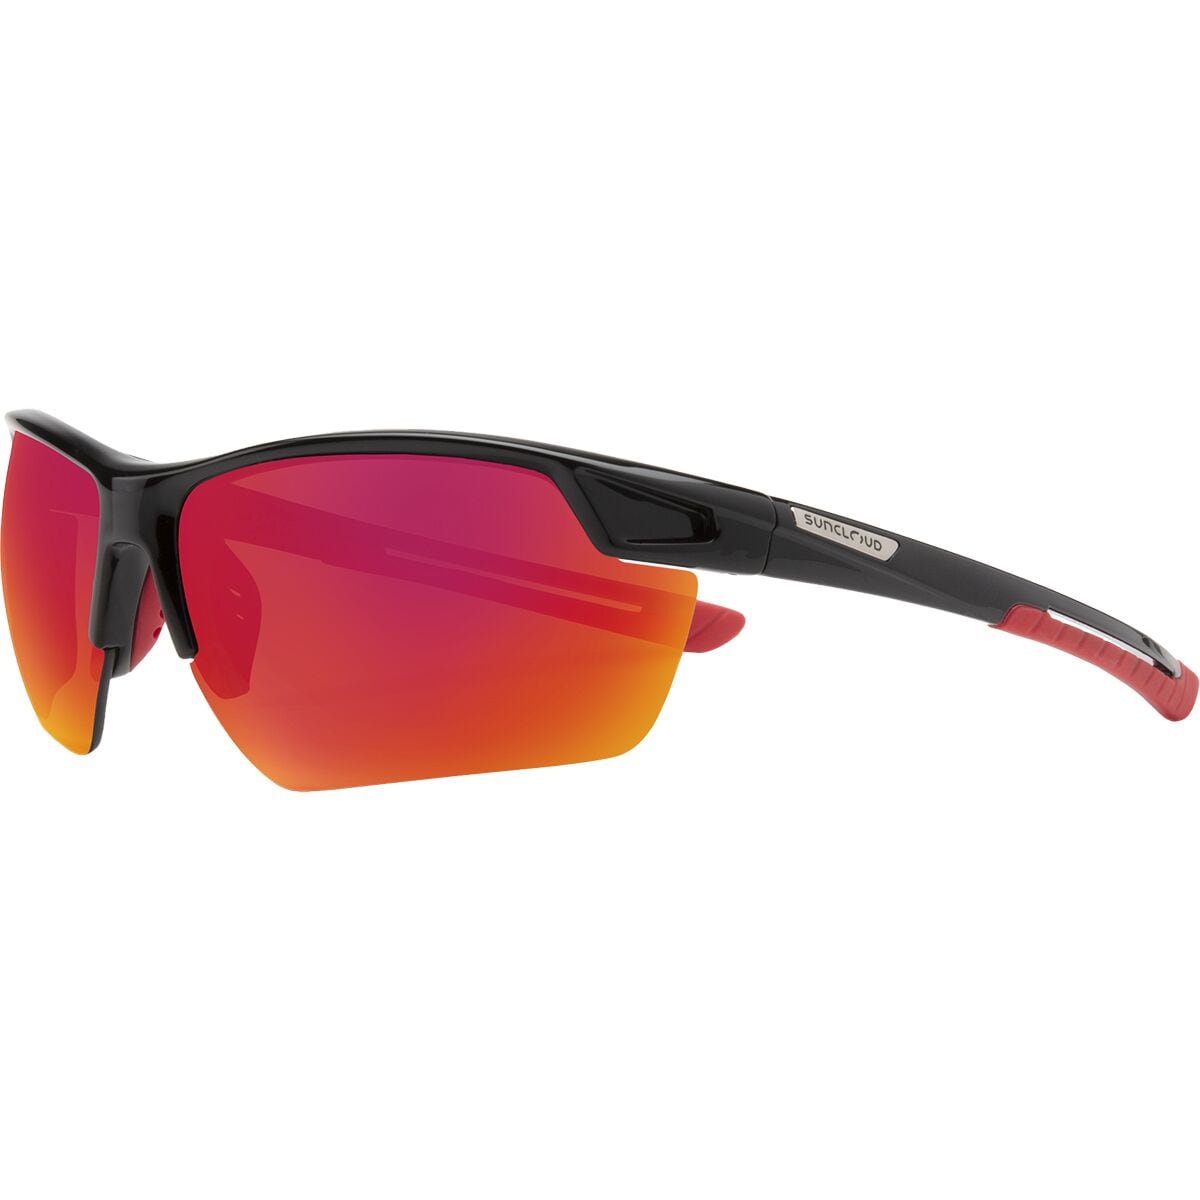 Поляризованные солнцезащитные очки contender Suncloud Polarized Optics, цвет black/polarized red mirror